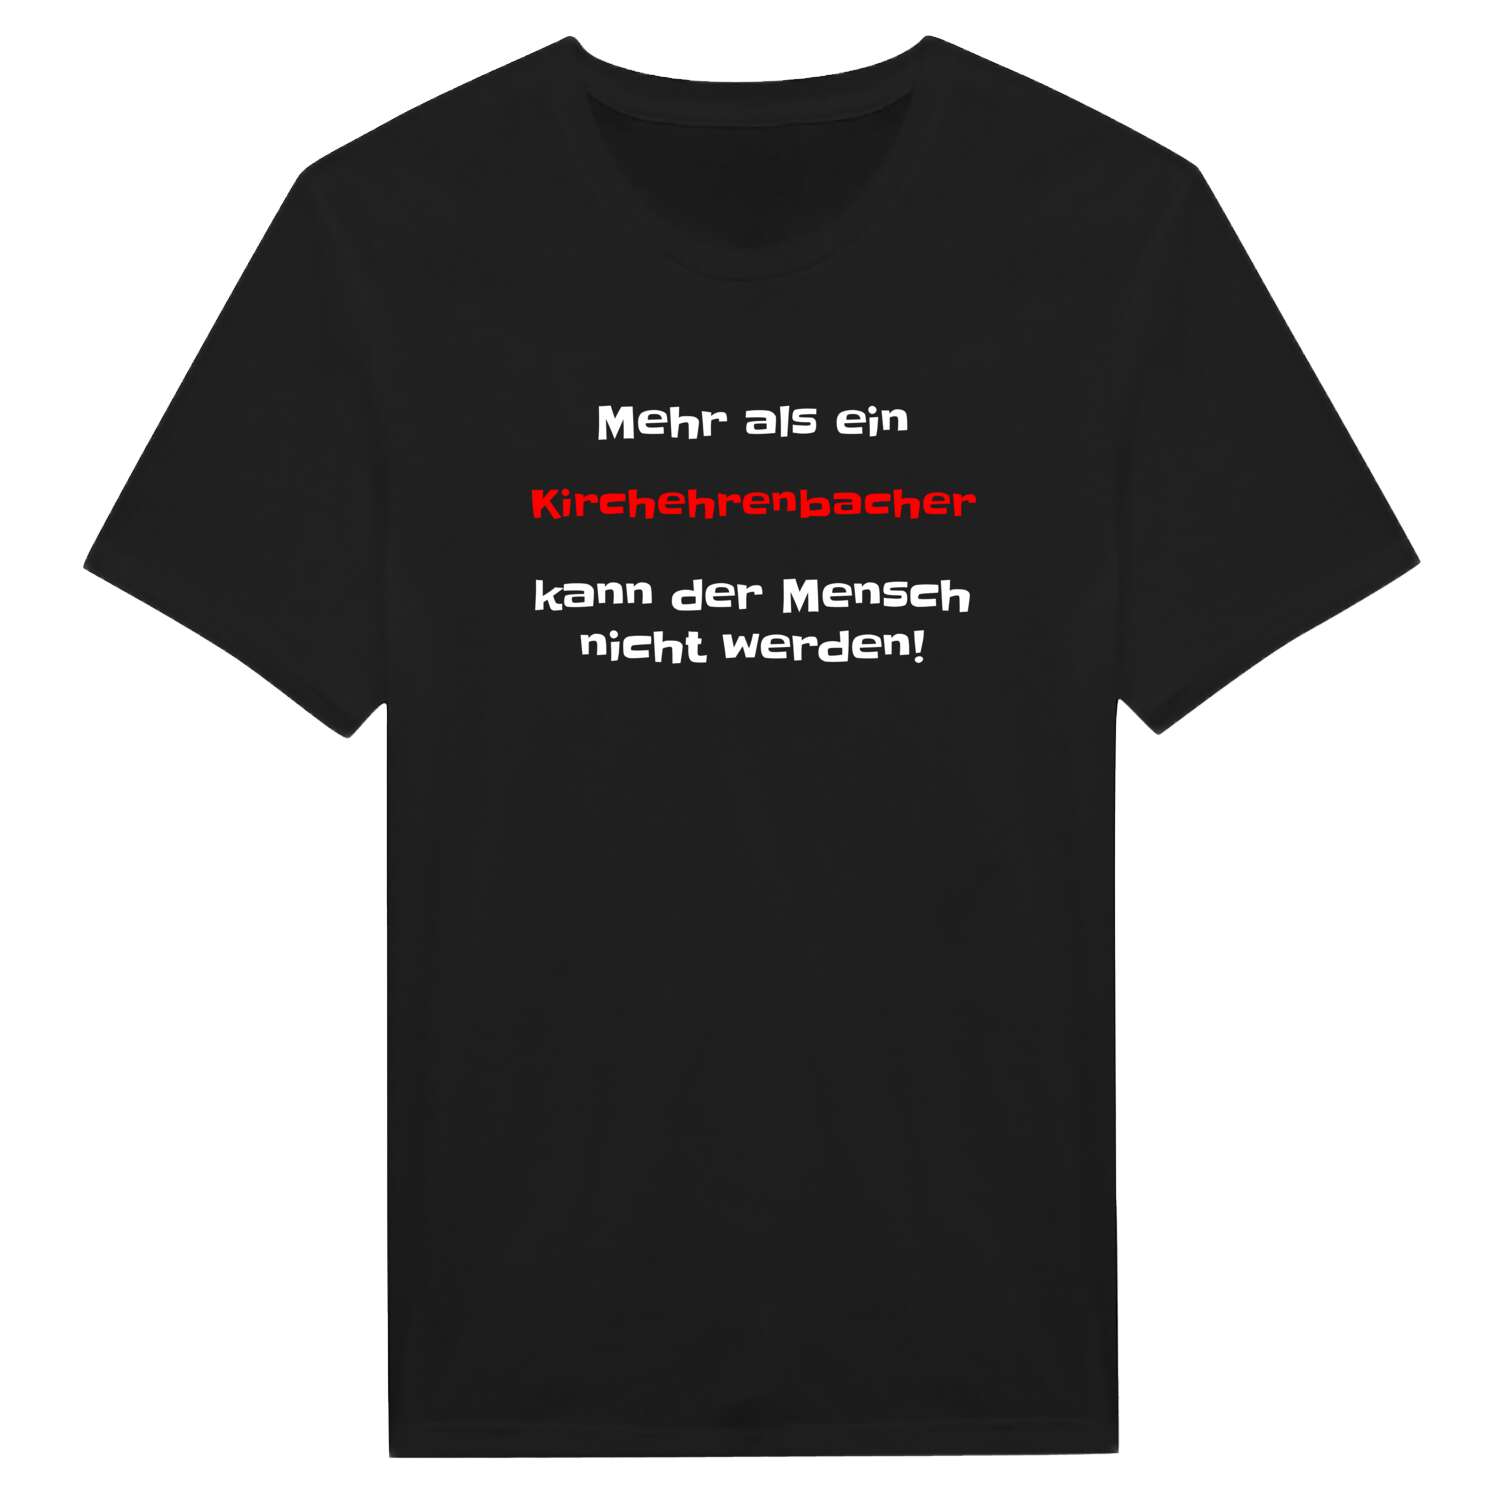 Kirchehrenbach T-Shirt »Mehr als ein«